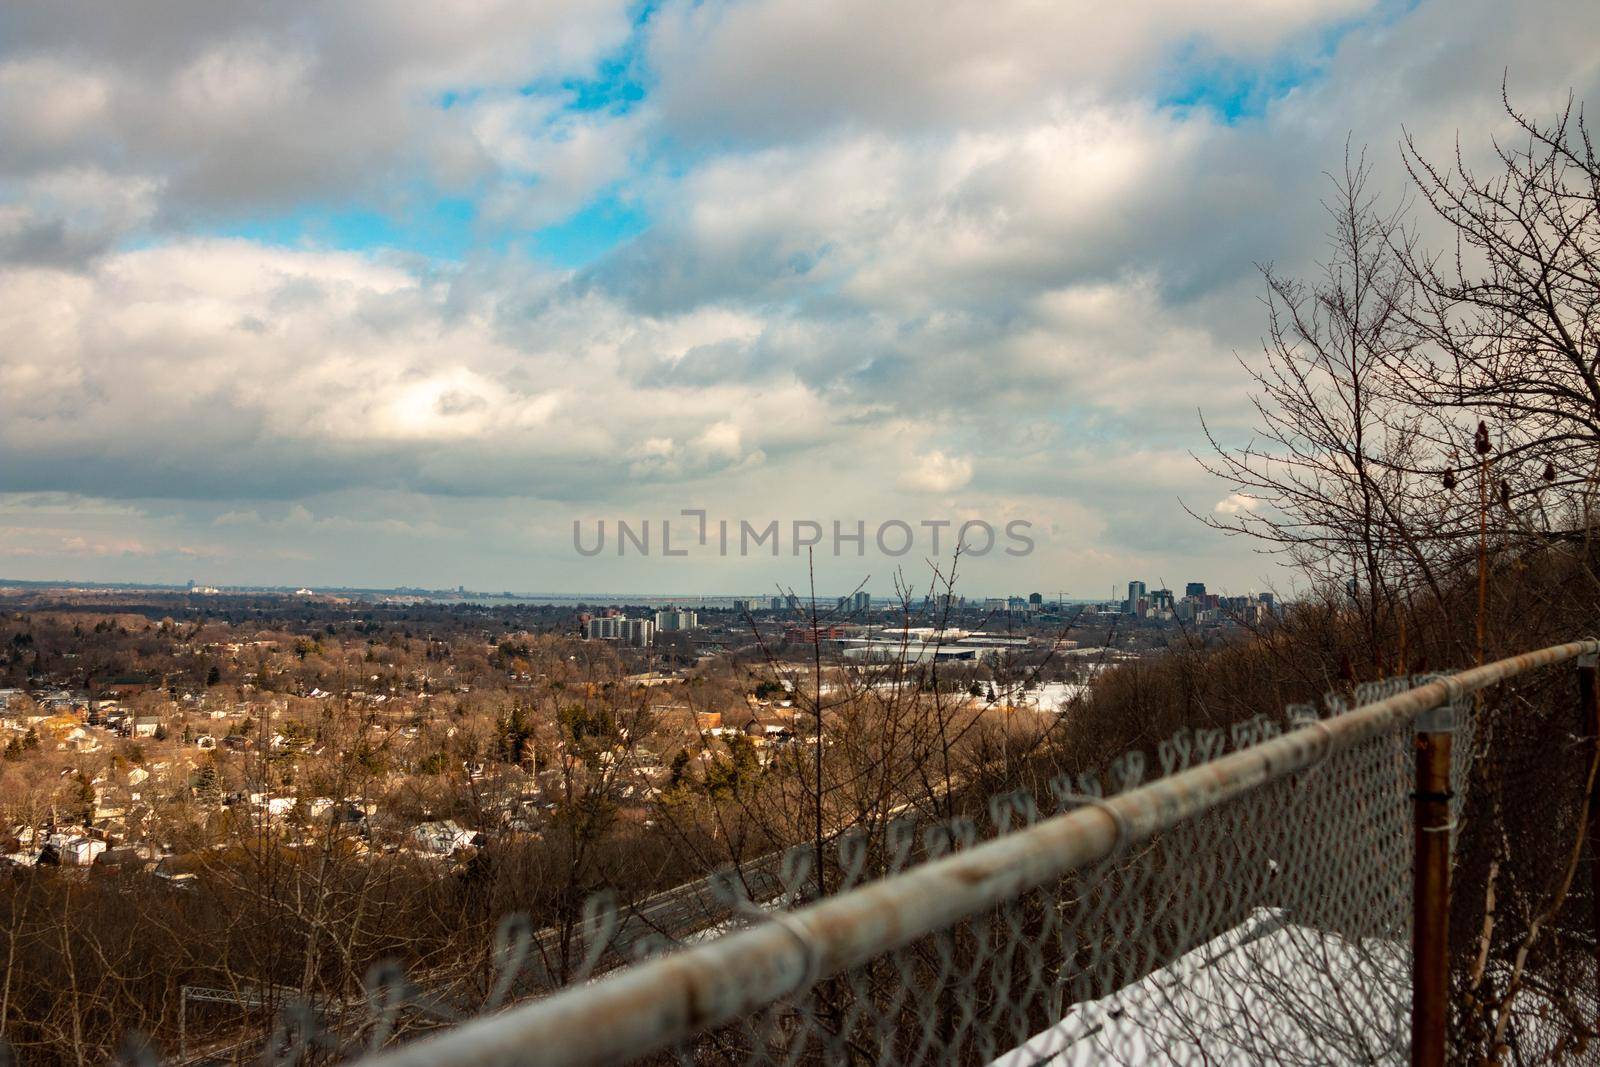 Hamilton skyline photos, a city near the GTA by mynewturtle1